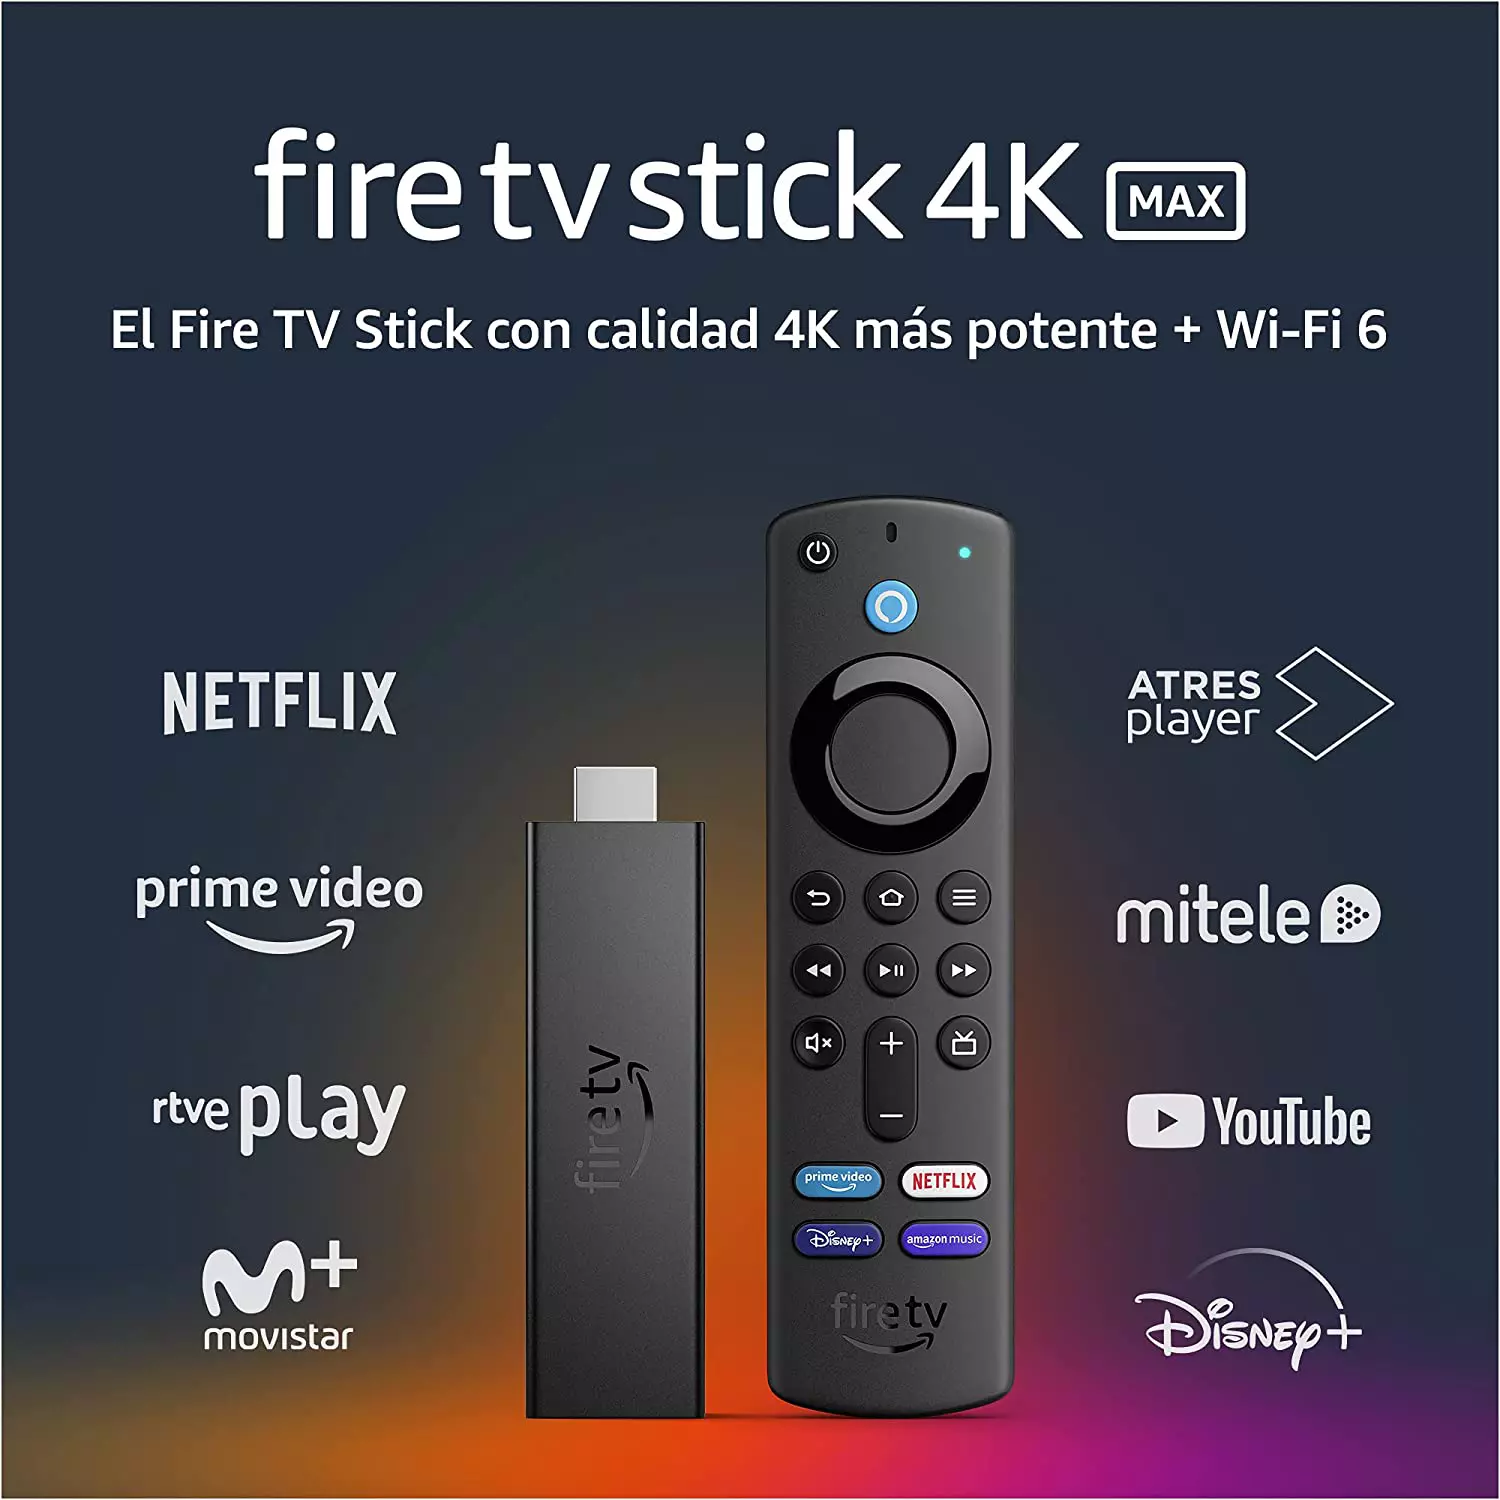 Oferta Especial Fire TV Stick 4K Max con Wi-Fi 6 y mando por voz Alexa (incluye controles para el televisor) por solo 39,99€